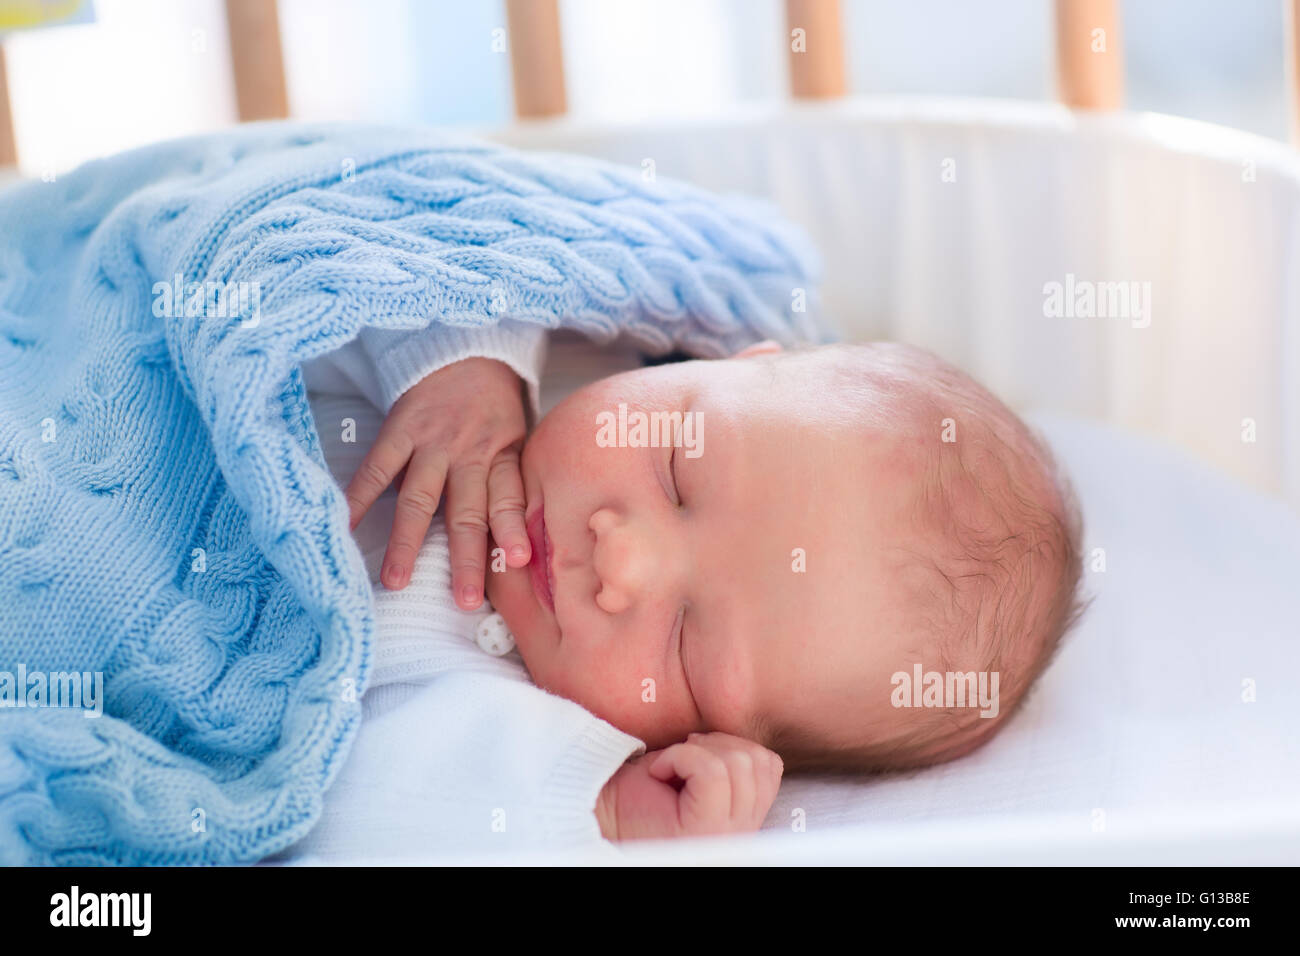 Bebé Recién Nacido En Un Hospital Durmiendo En Bassinet Imagen de